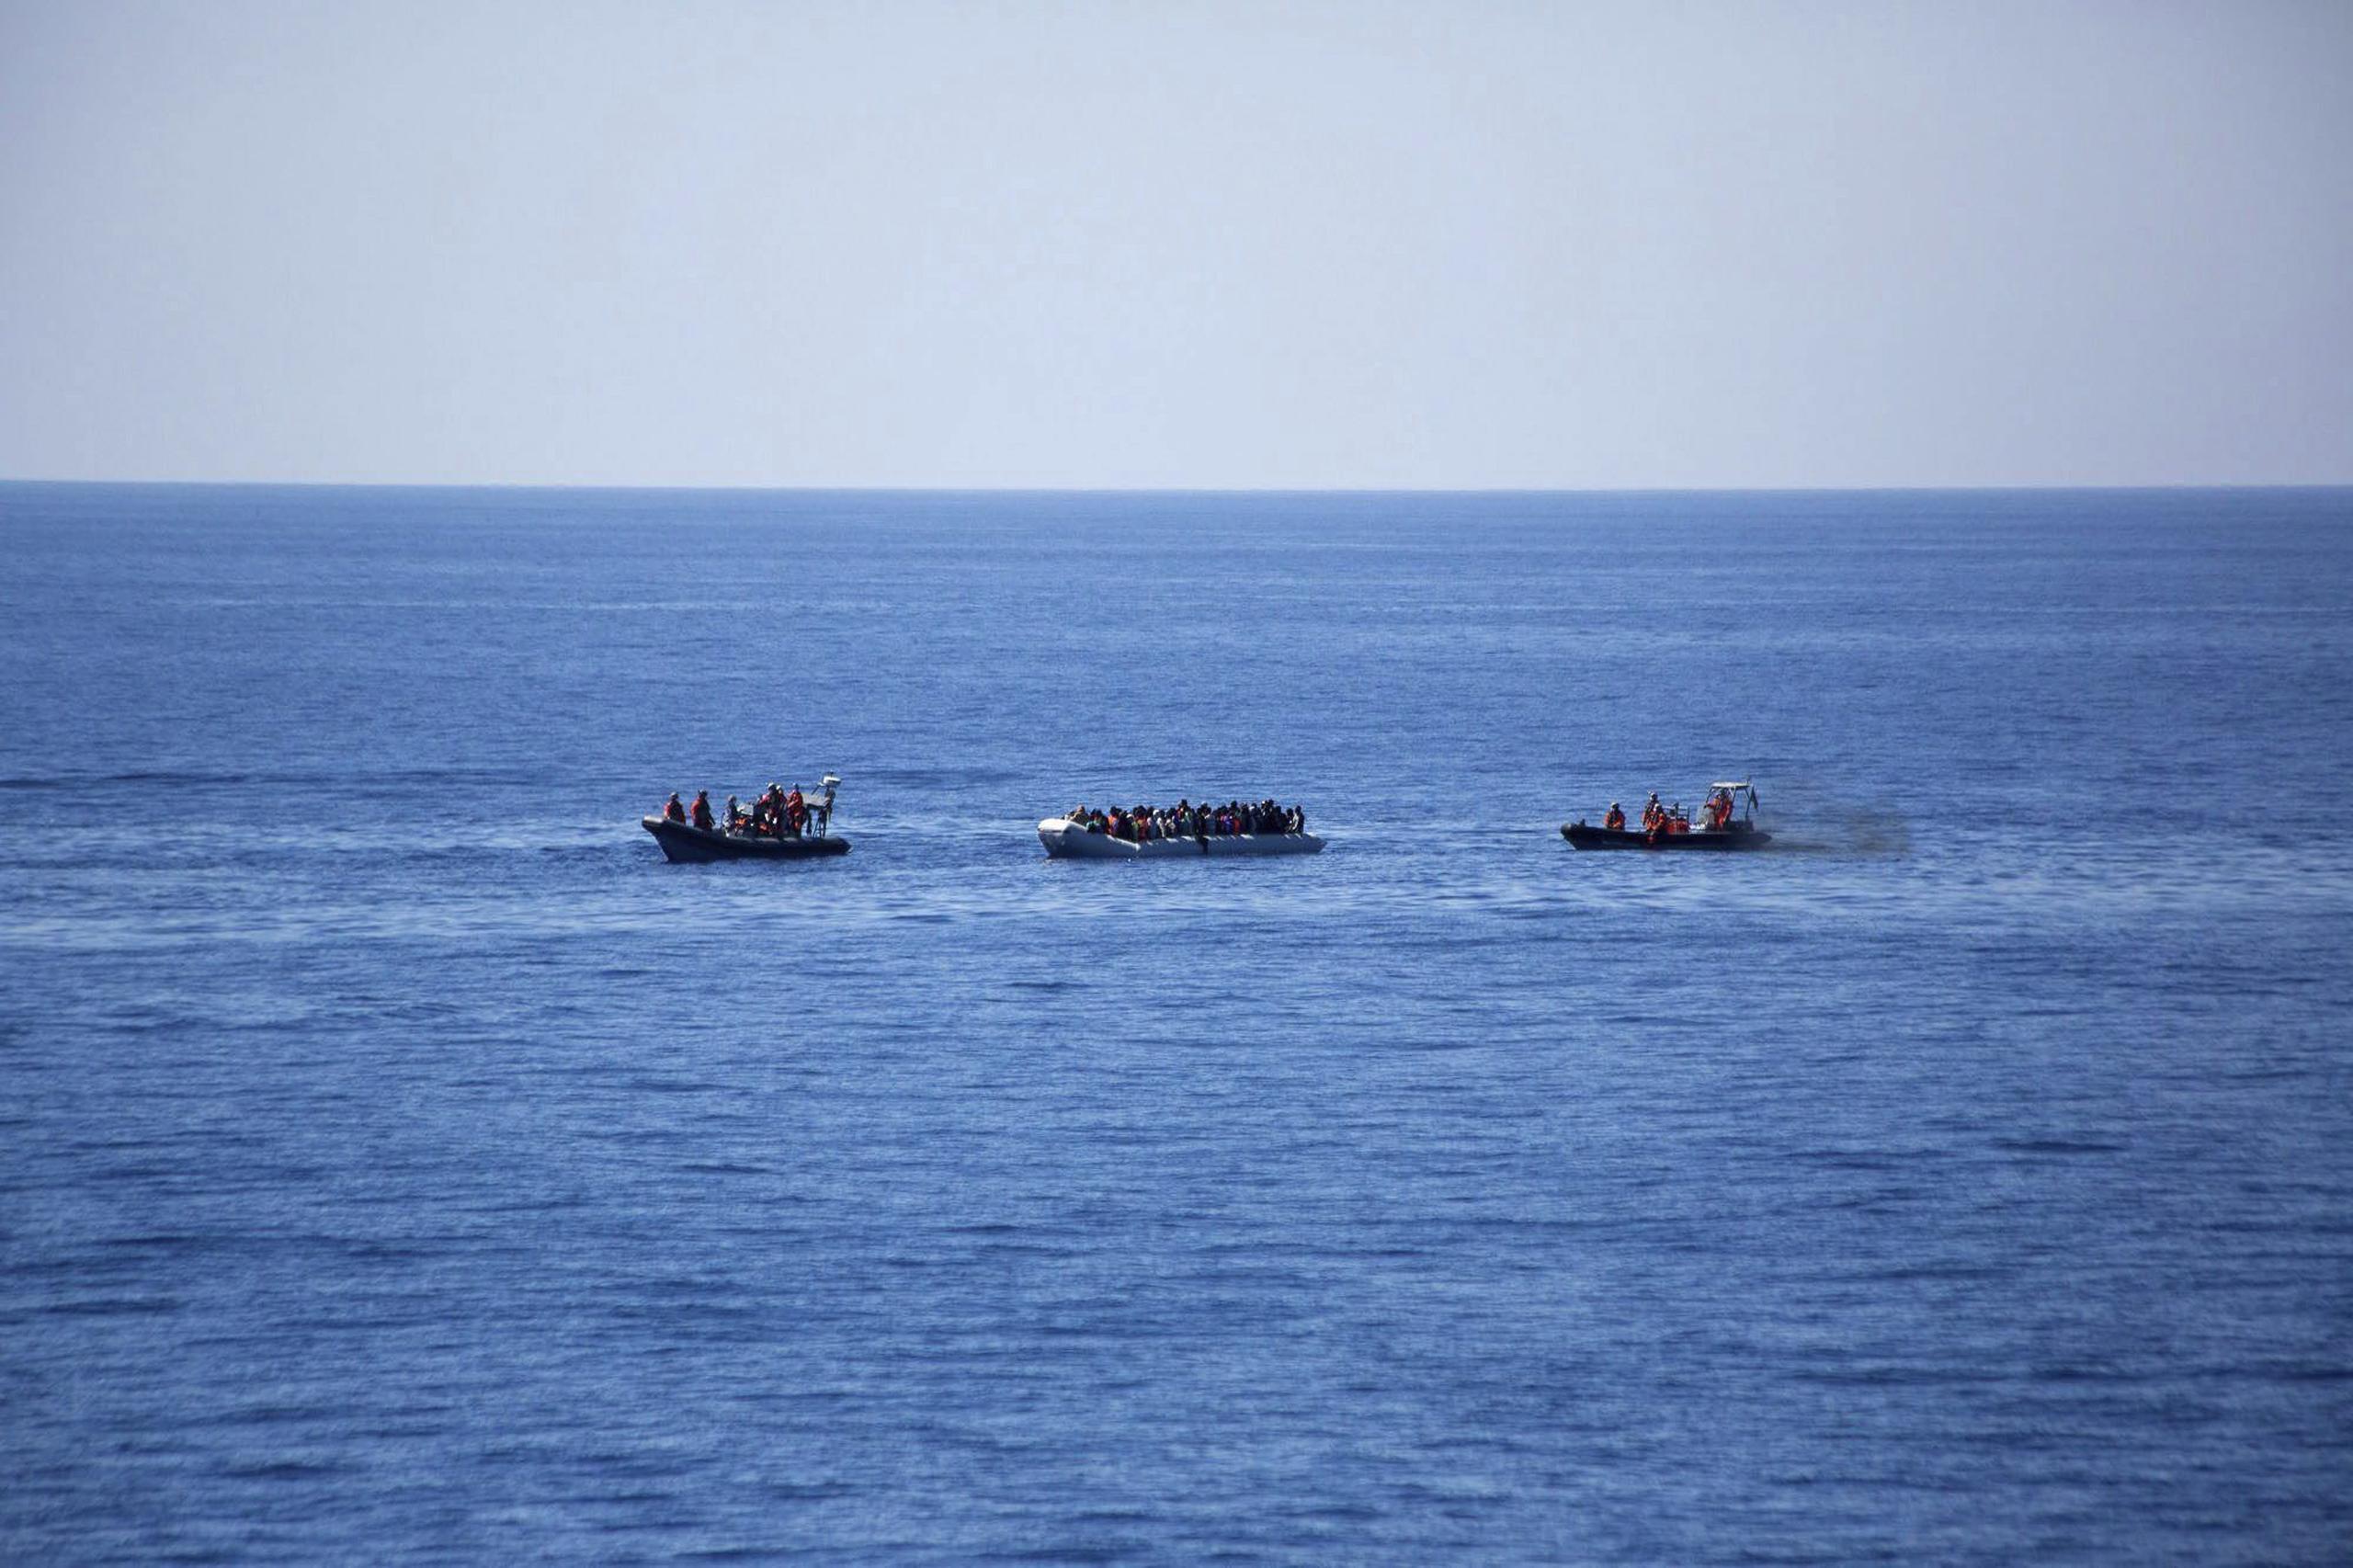 Cientos de inmigrantes que embarcan en los llamados "buques chatarra", cargados muy por encima de su capacidad, han muerto ahoagdos en el mar. (EFE/Sascha Jonack)